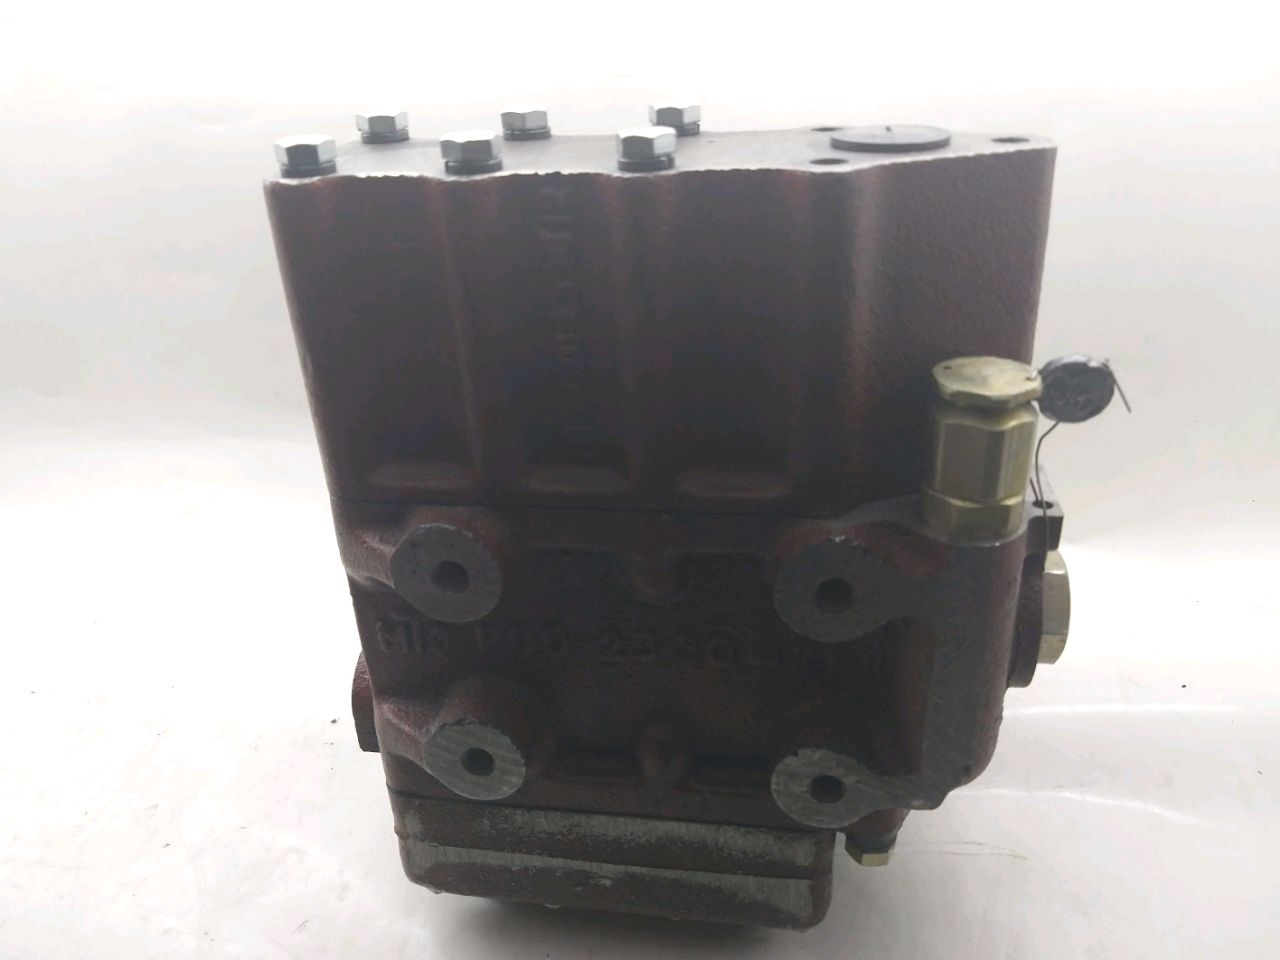 Distribuitor hidraulic R80-3/4-222GG (Belorusia)